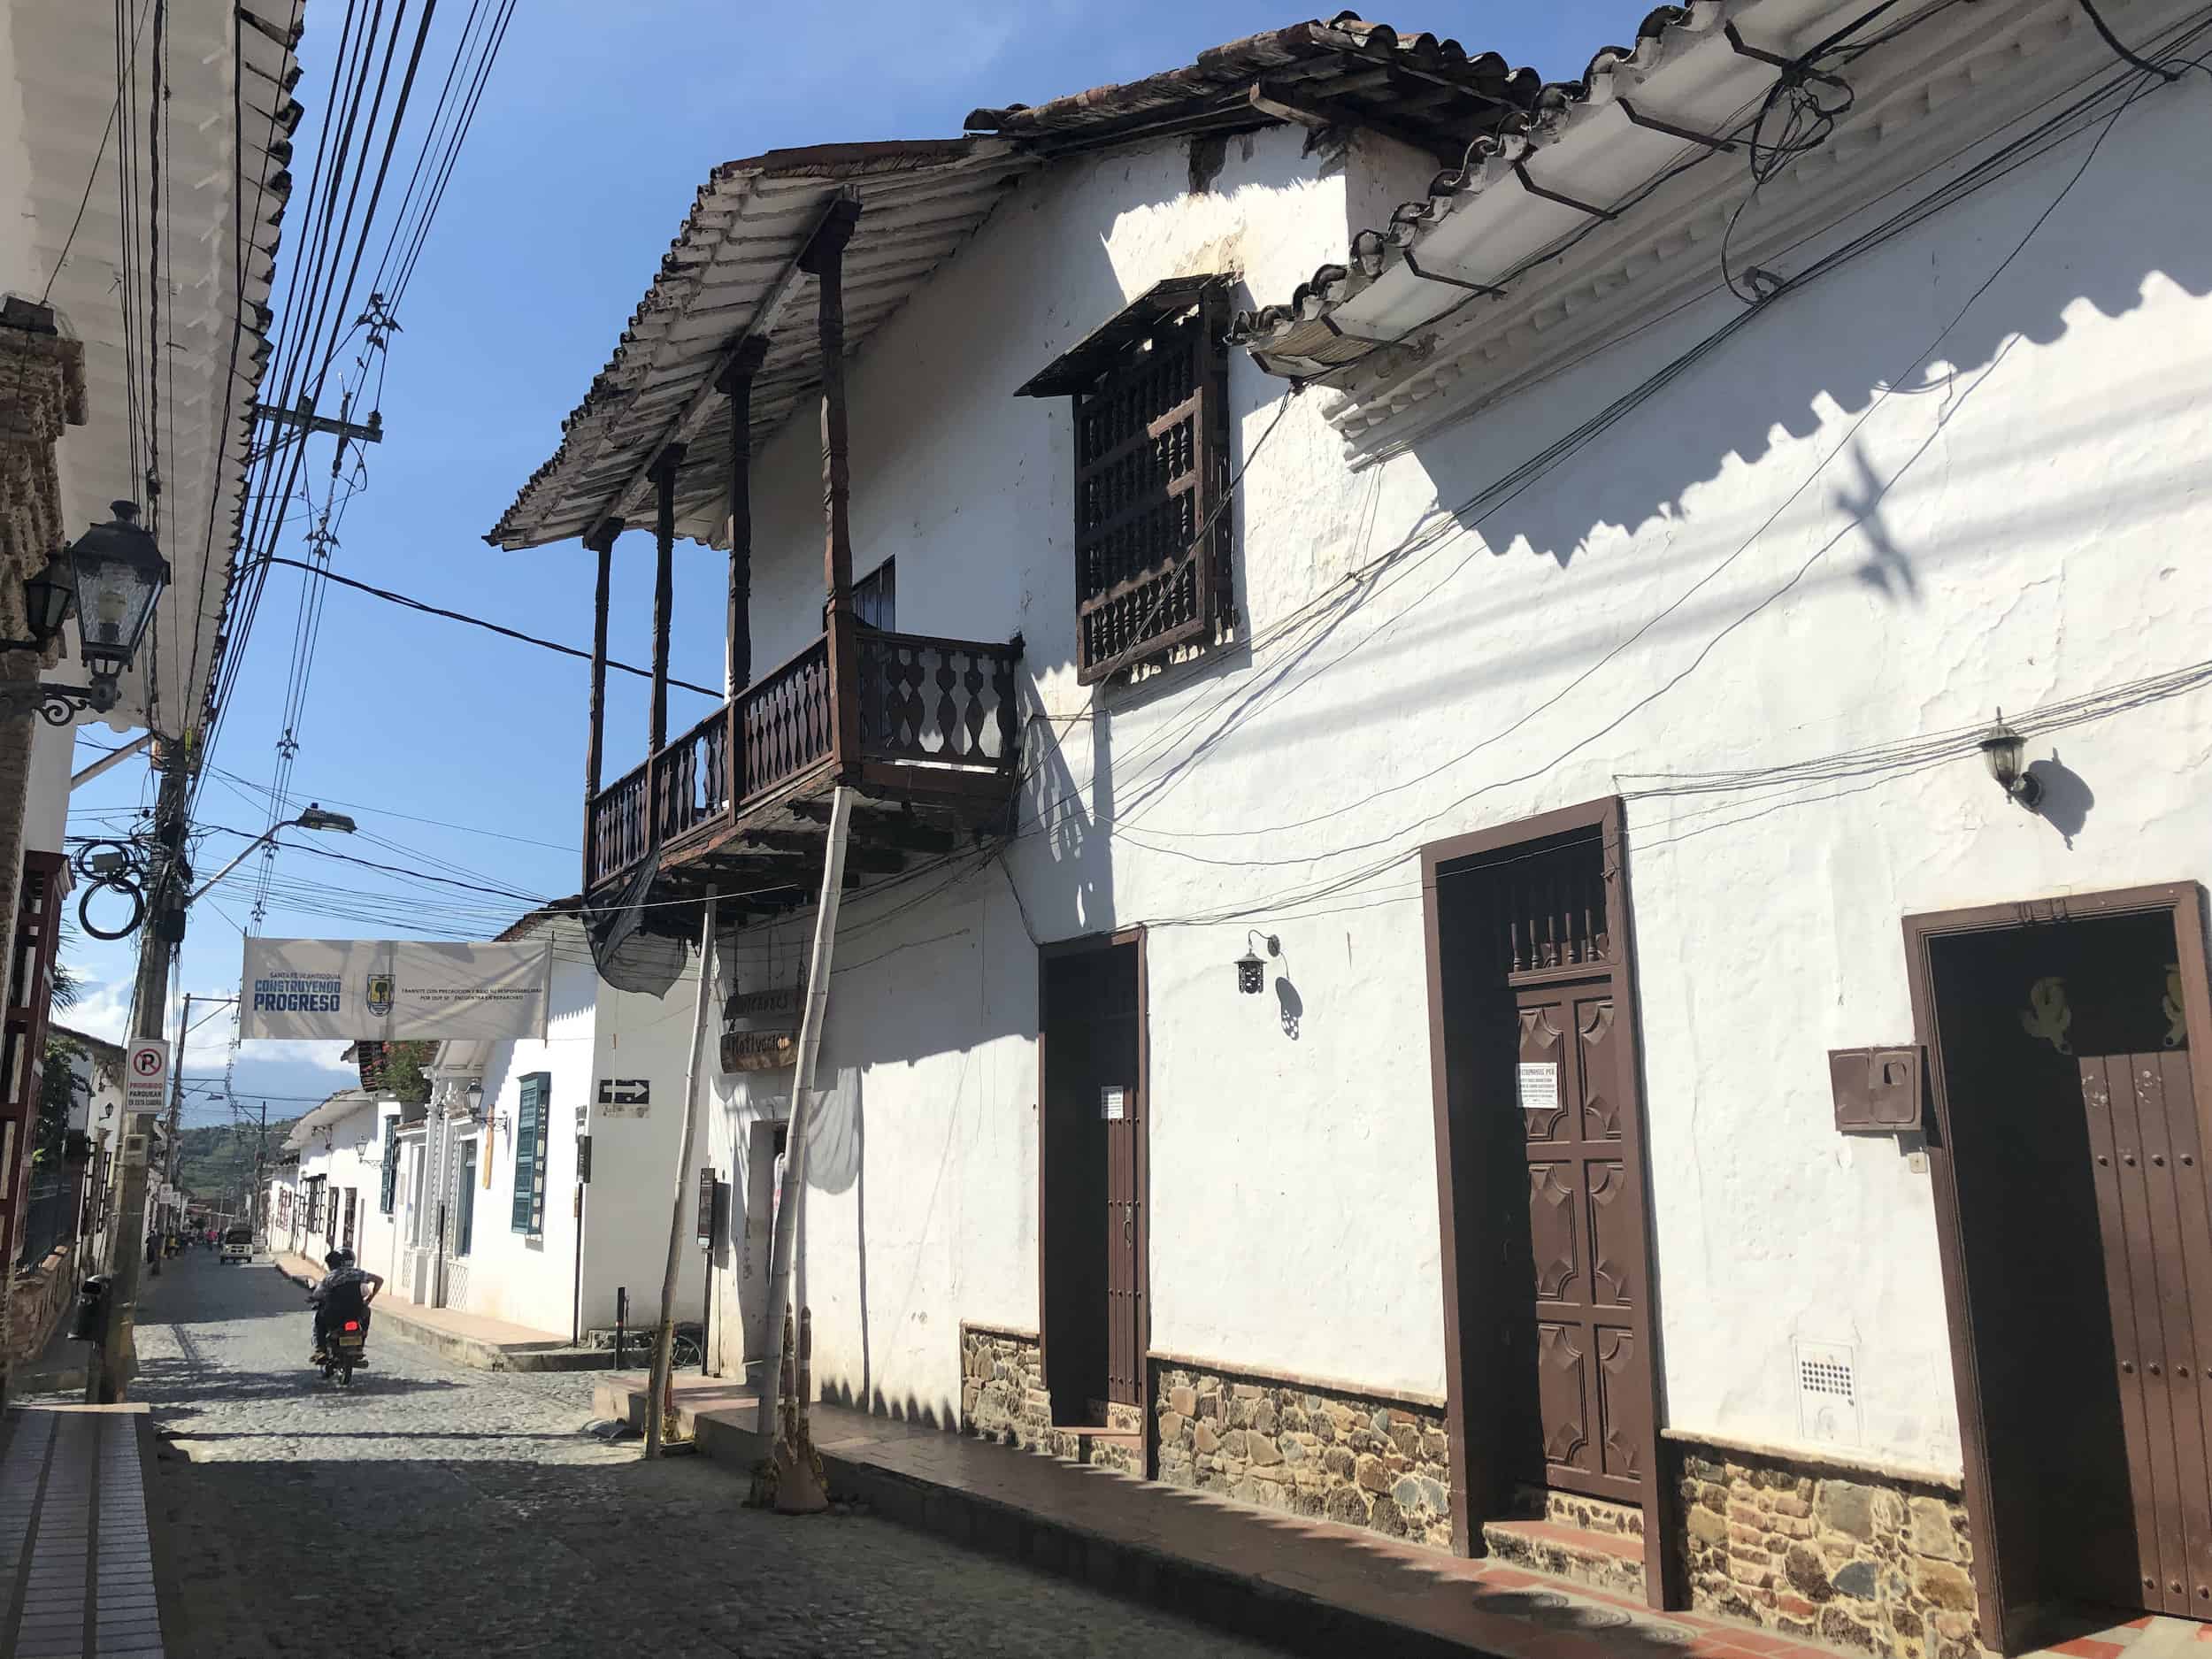 House of Juan del Corral in Santa Fe de Antioquia, Colombia